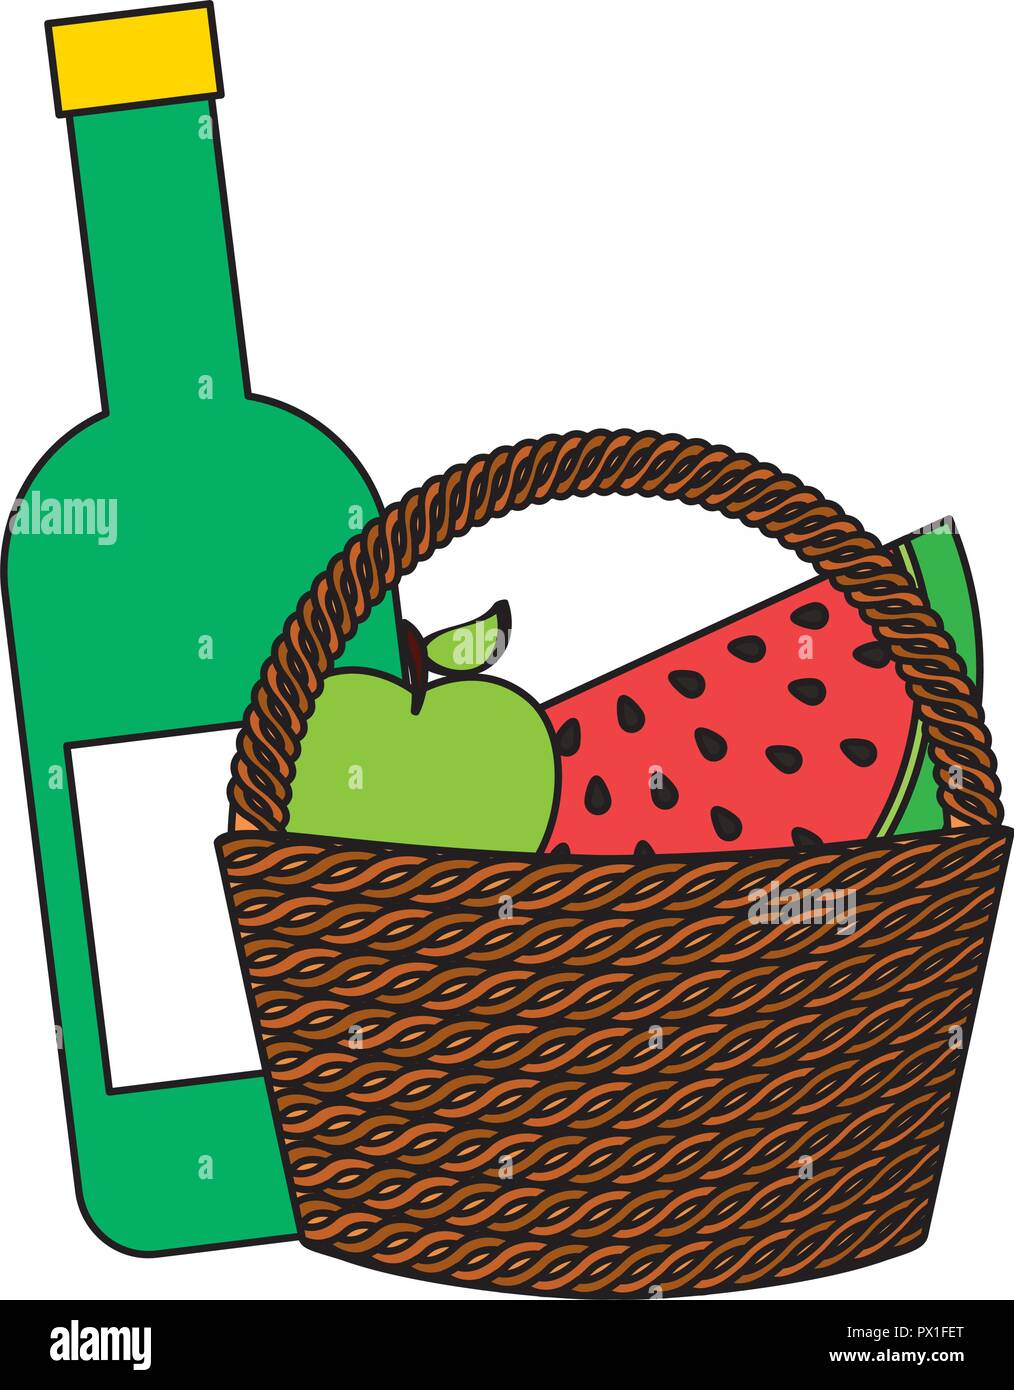 Weidenkorb Wein Früchte essen Picknick Vector Illustration Stock Vektor